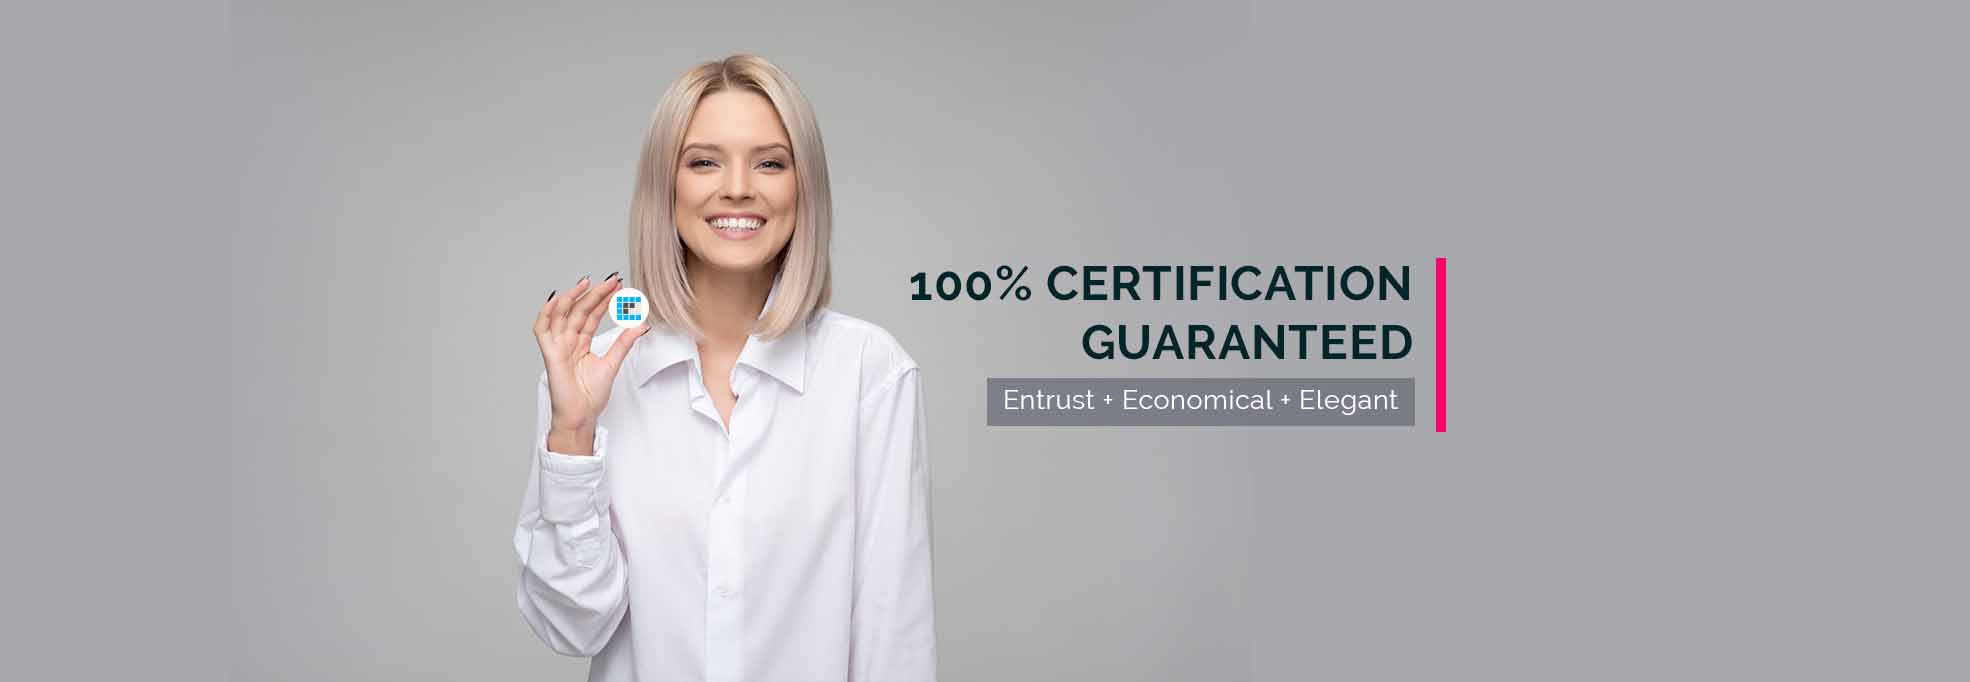 iso certification in kerala